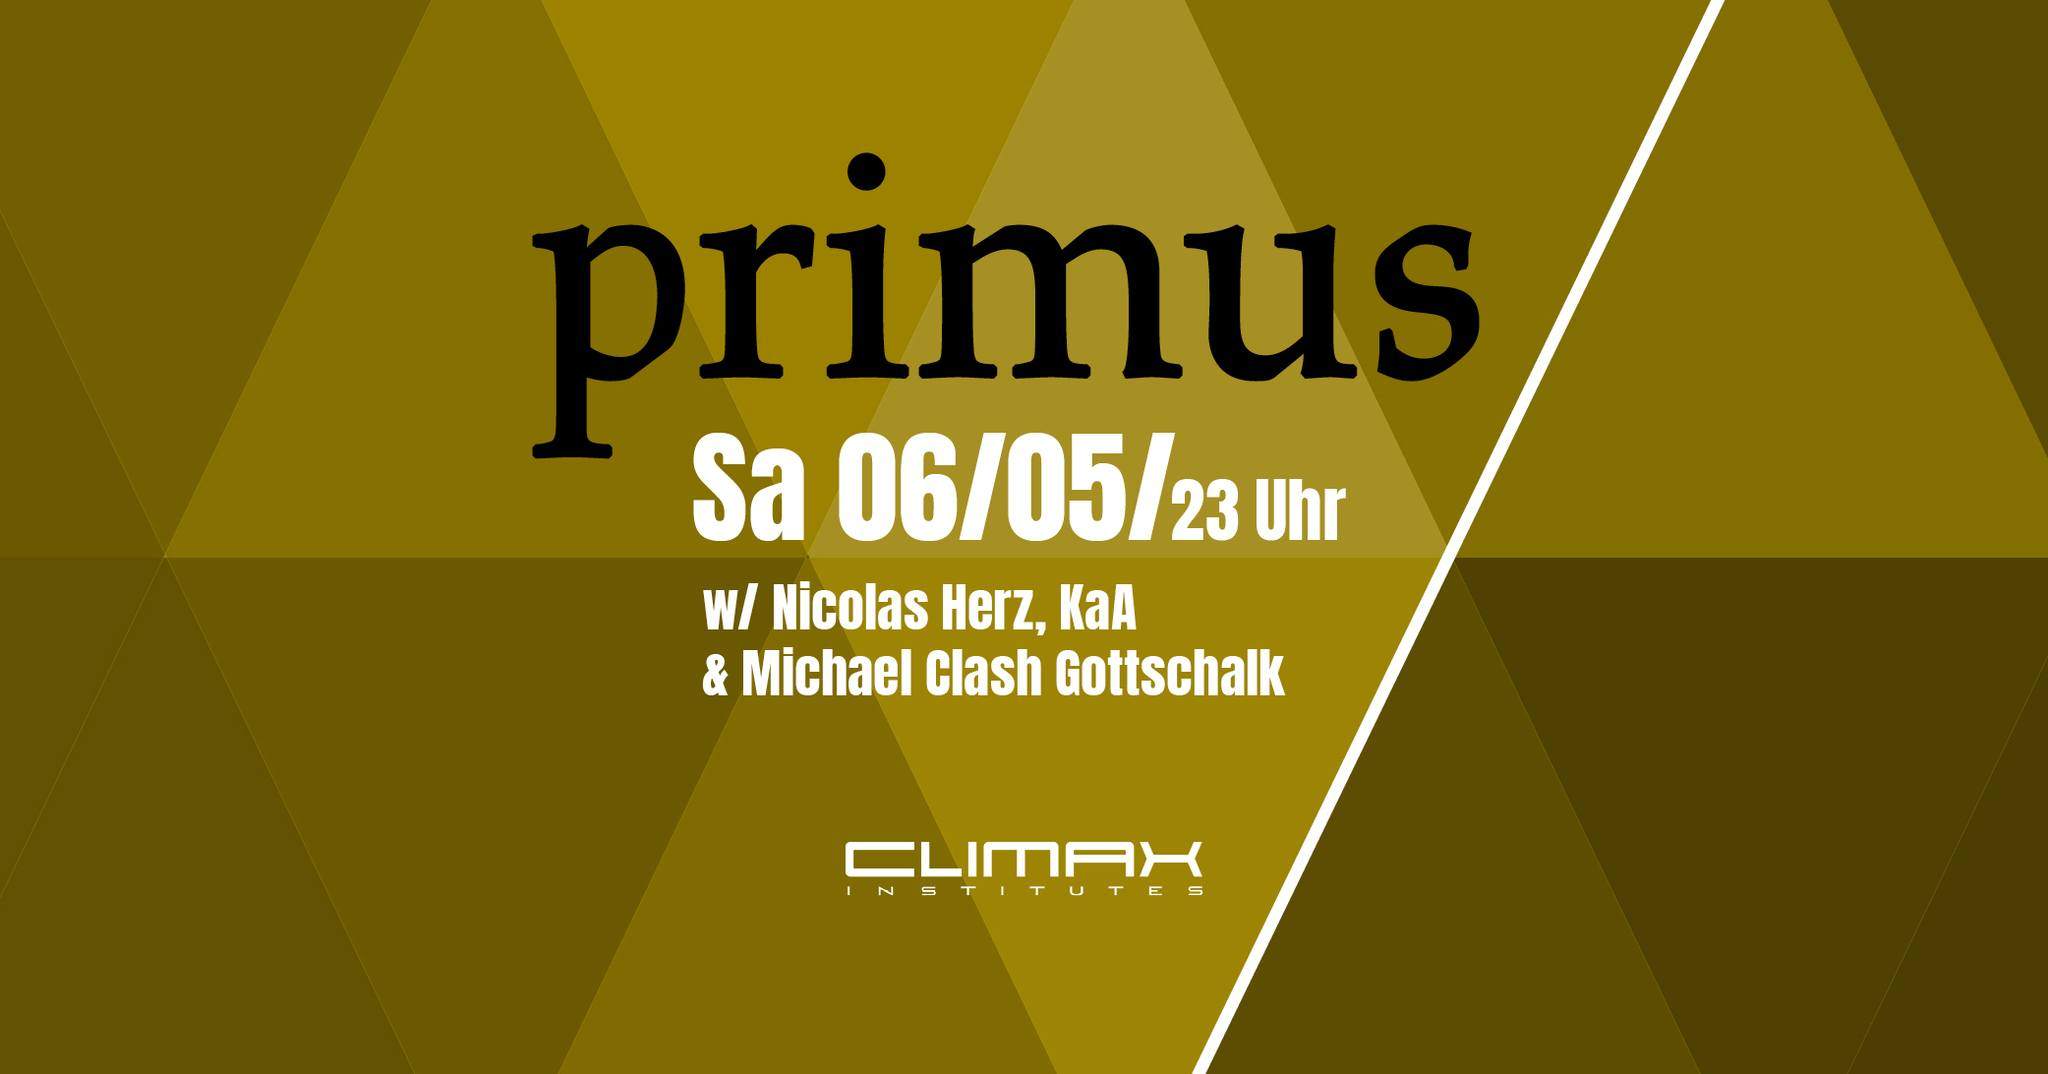 PRIMUS with Nicolas Herz, KaA & Michael Clash Gottschalk - フライヤー表